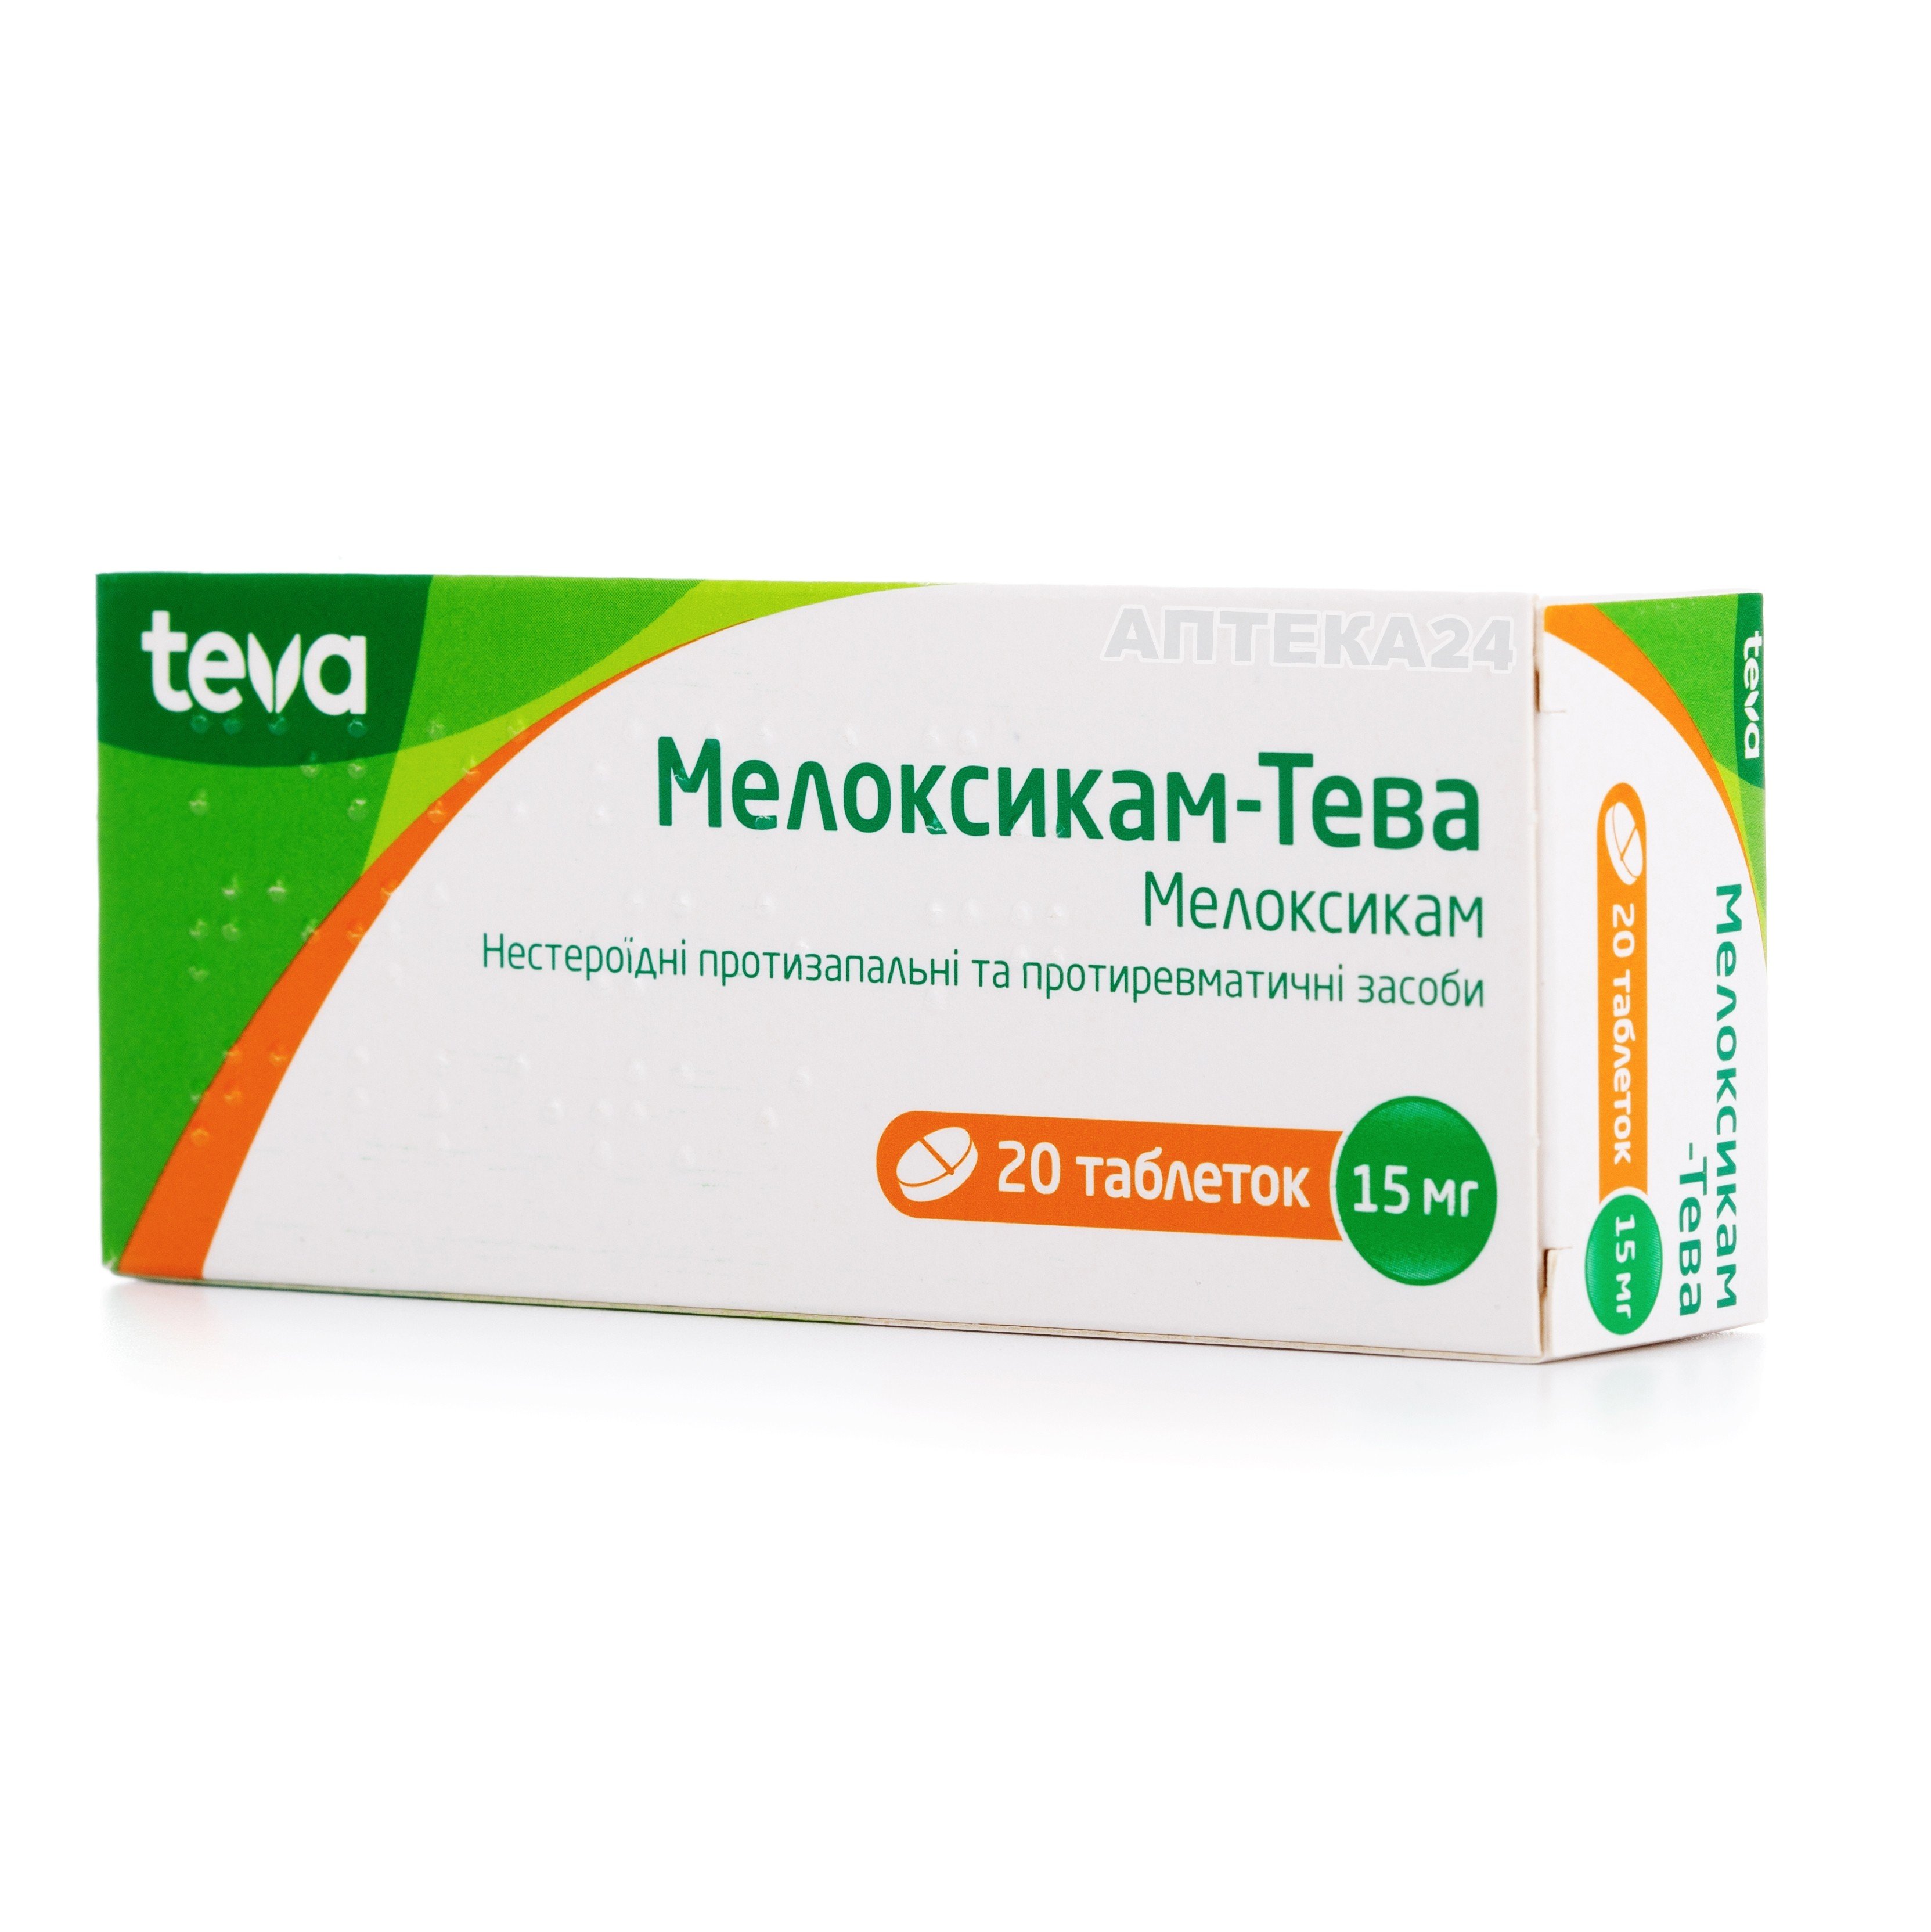 Мелоксикам-Тева таблетки по 15 мг, 20 шт.: інструкція, ціна, відгуки .